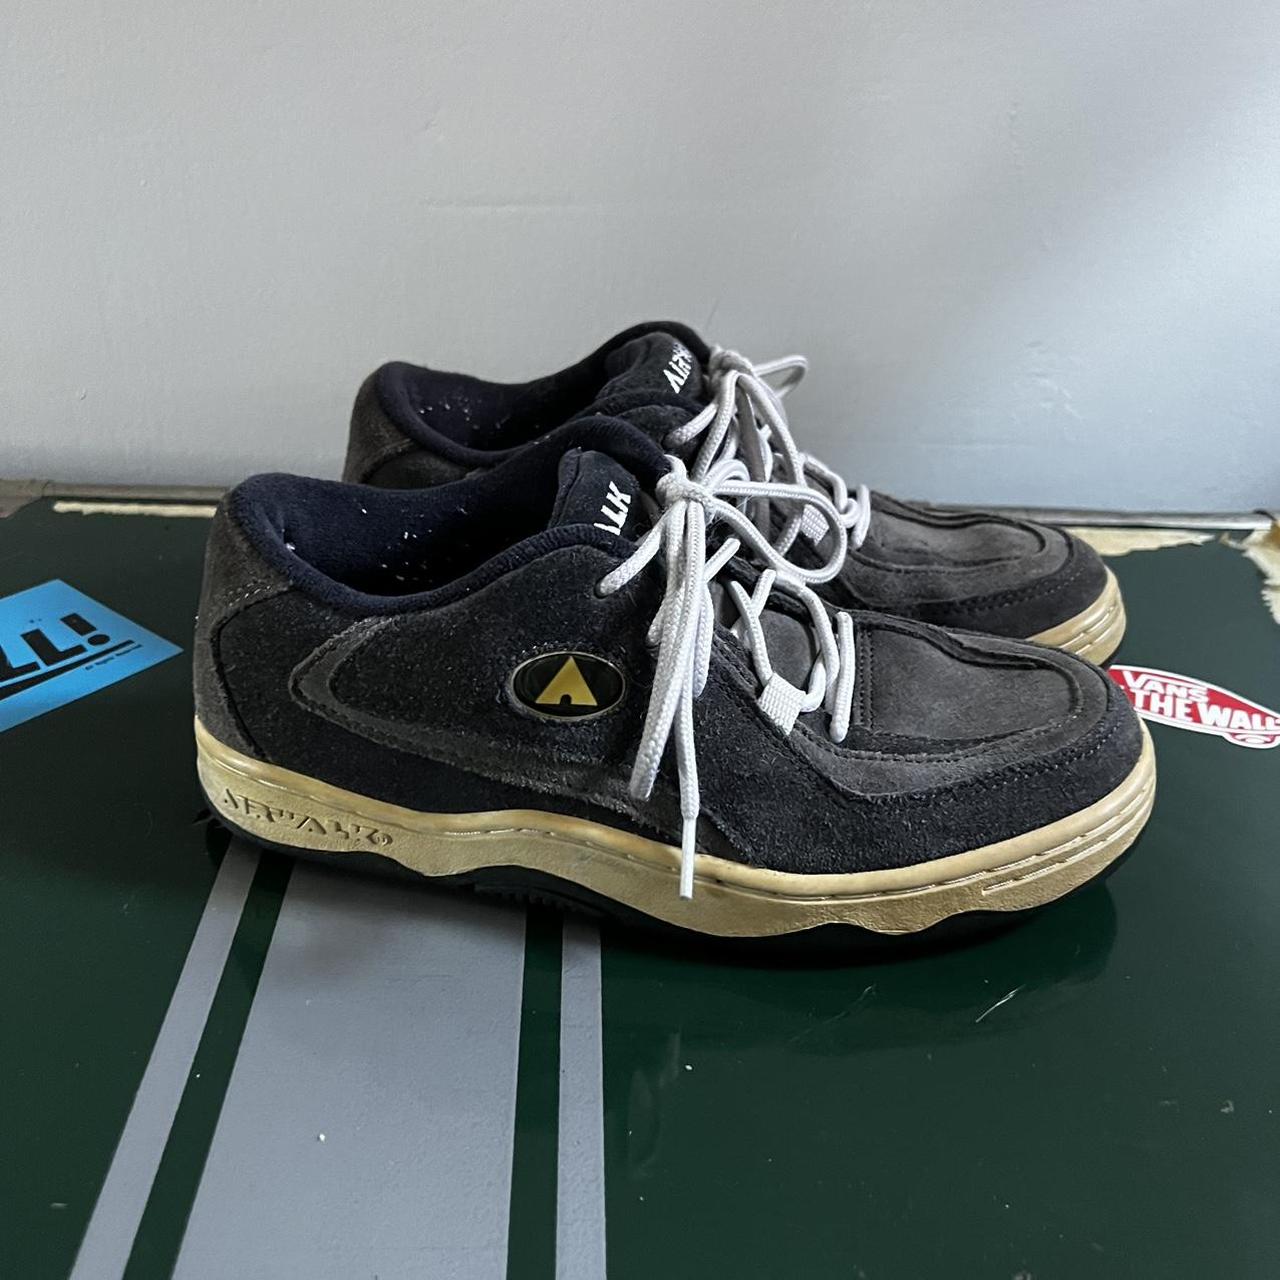 Rare 90s Airwalk chunky skate shoes size men's 7.... - Depop